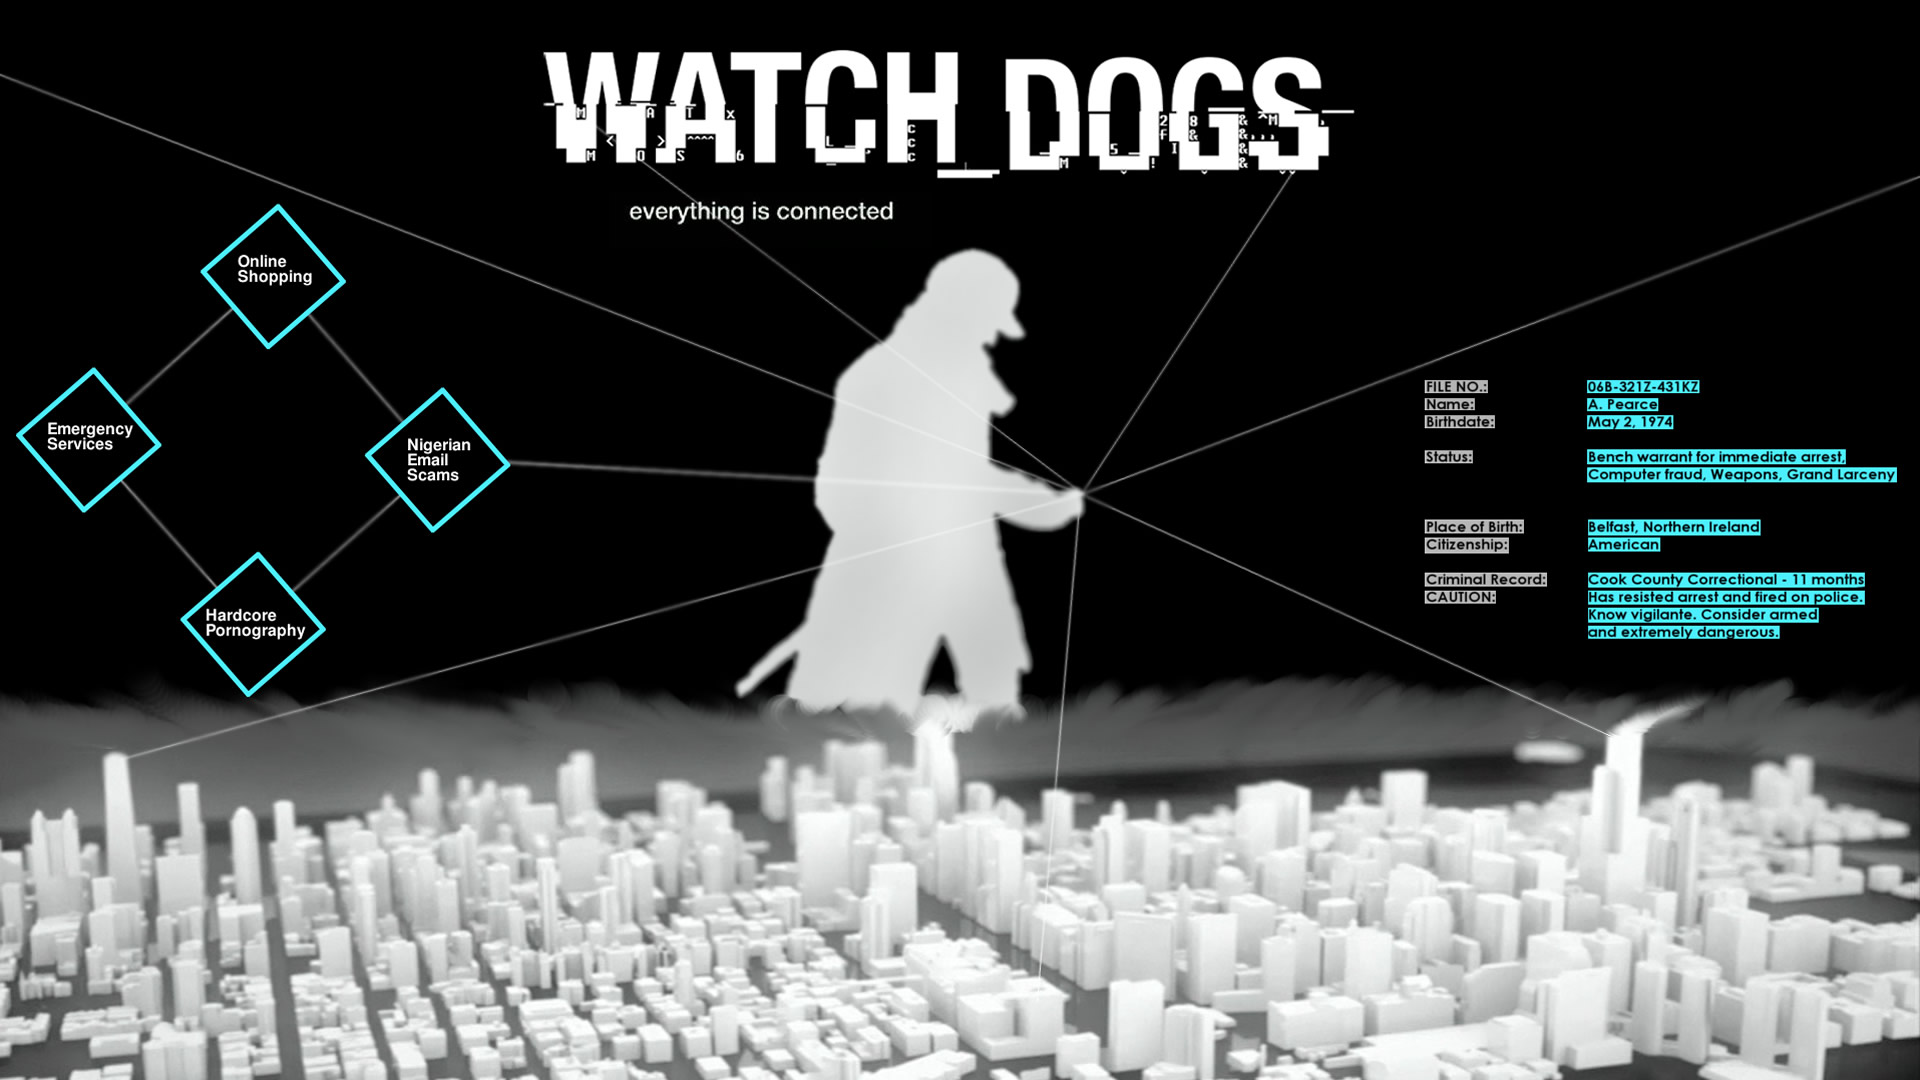 壁紙集 ウォッチドッグス Watch Dogs 攻略情報 ファンサイト